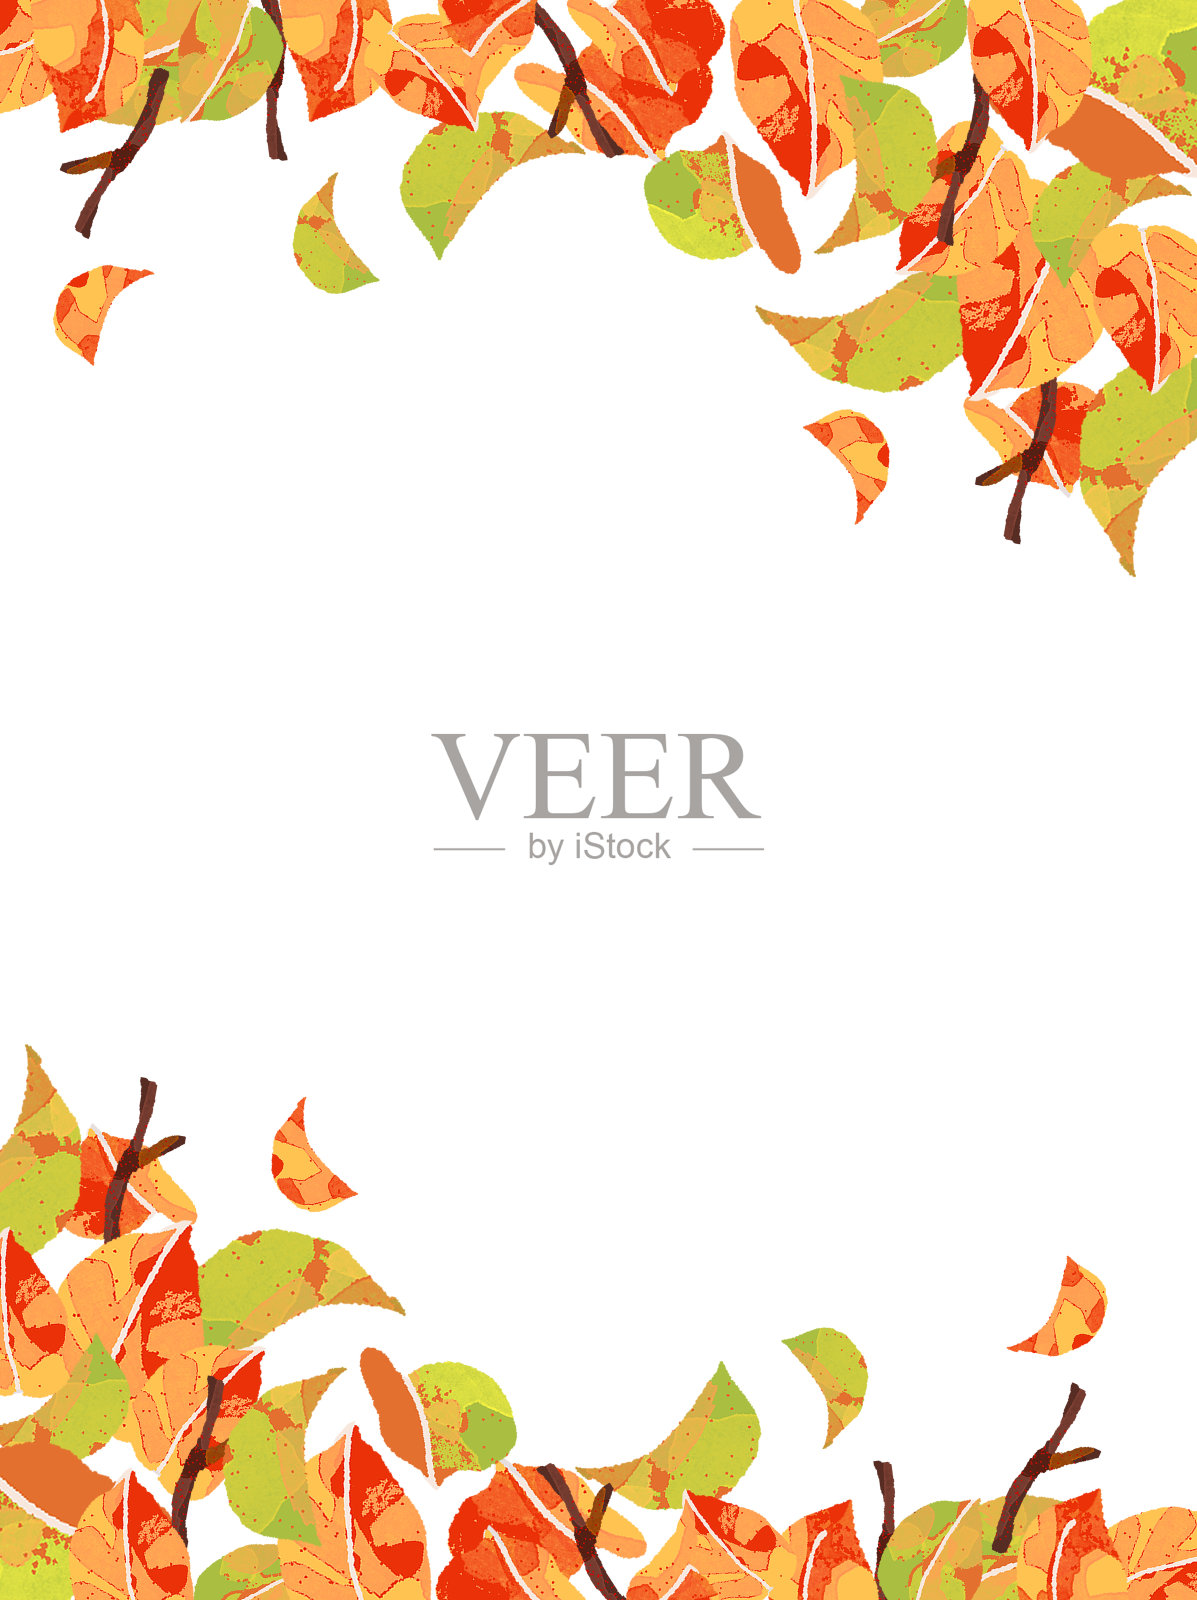 秋天的落叶/秋天/植物帧/背景(向量)设计元素图片